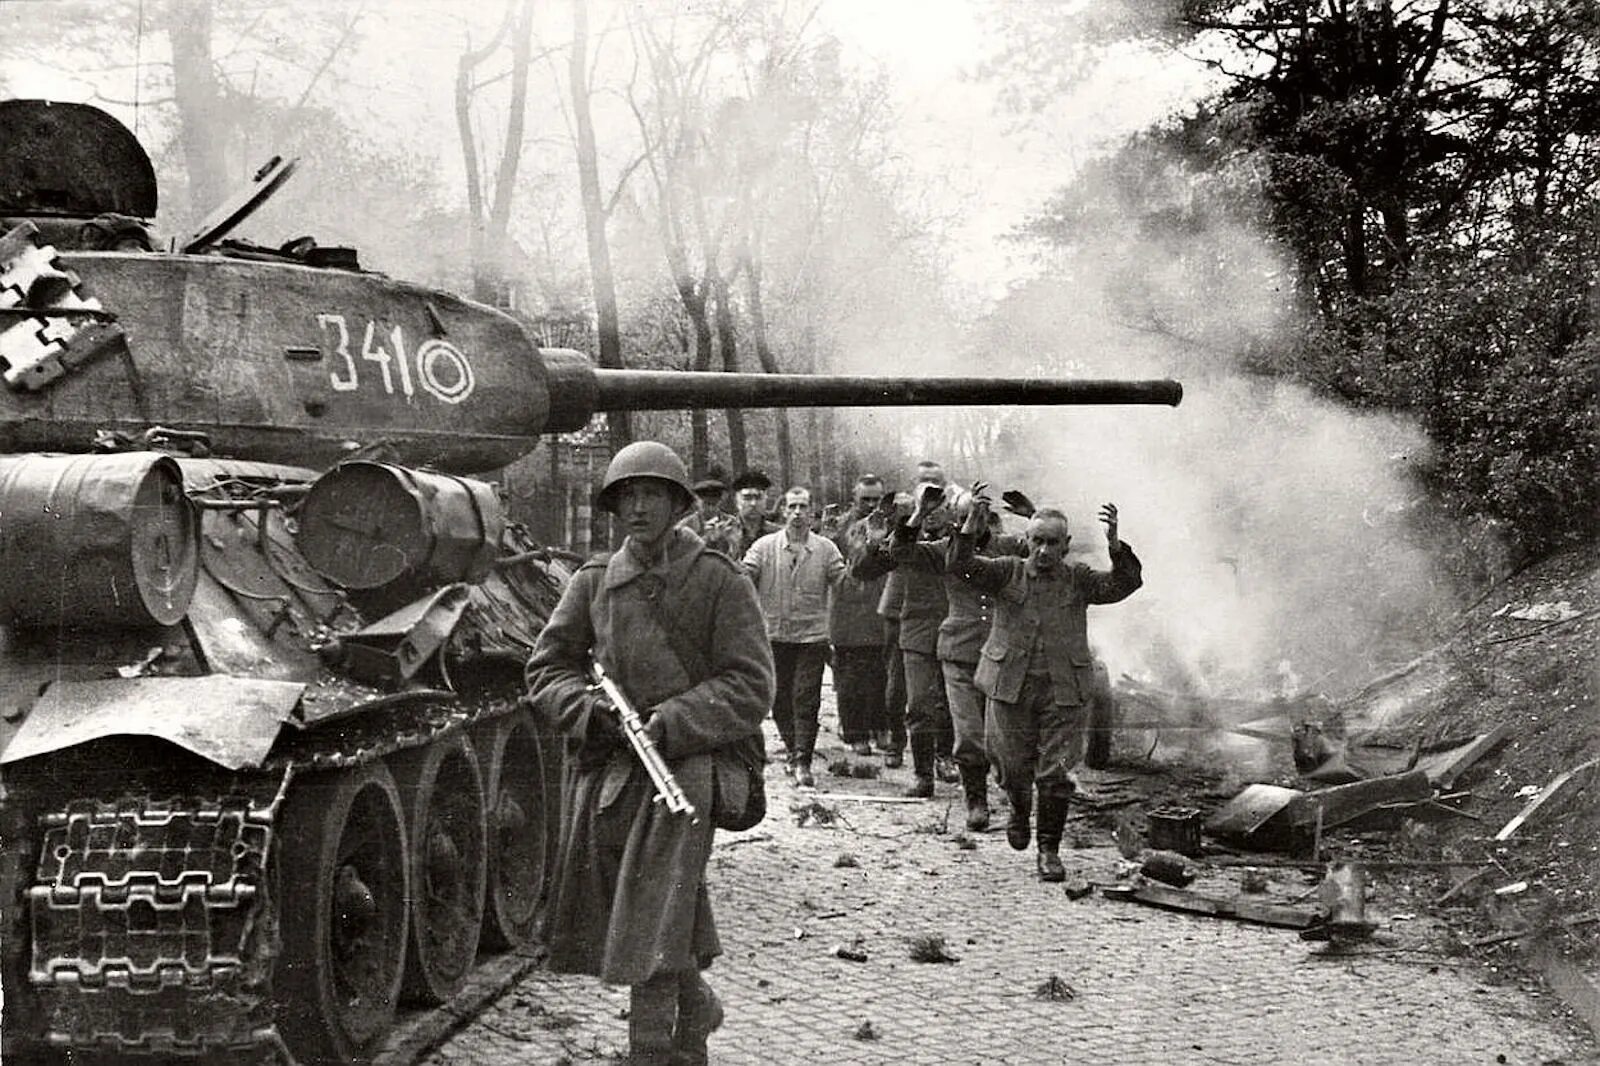 Оружие Победы т34 1945 года-. Танк т 34 в Берлине. Танк т-34 в бою. Картинки про велико отечественную войну